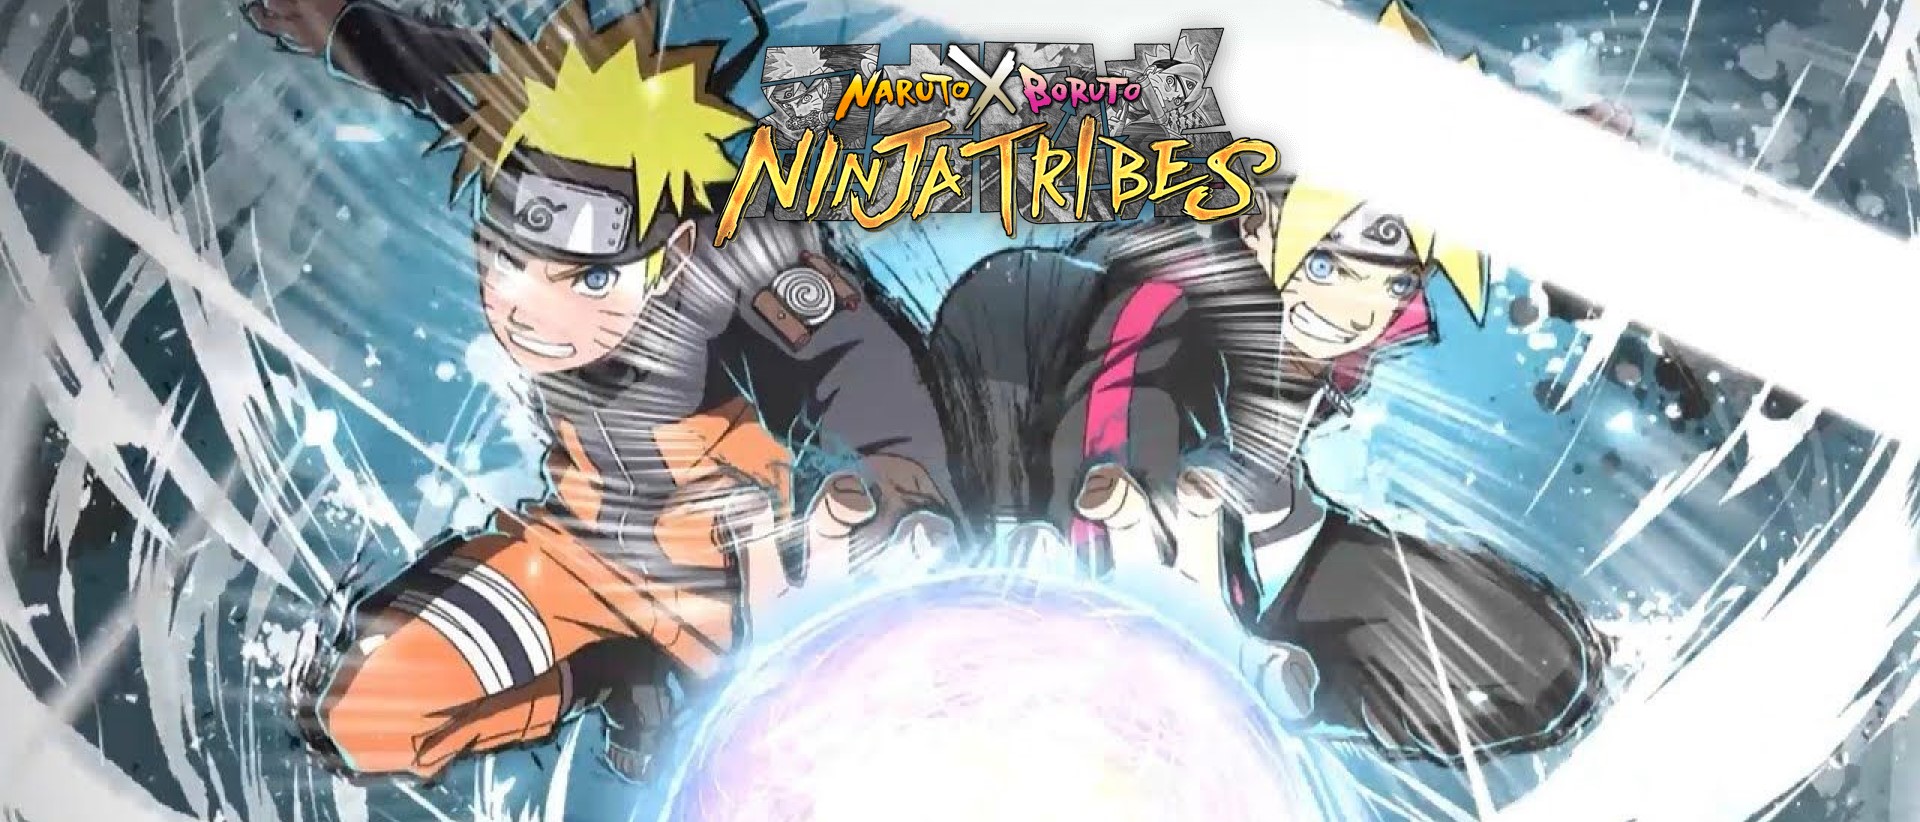 Play Naruto x Boruto Ninja Tribes on PC with NoxPlayer ...